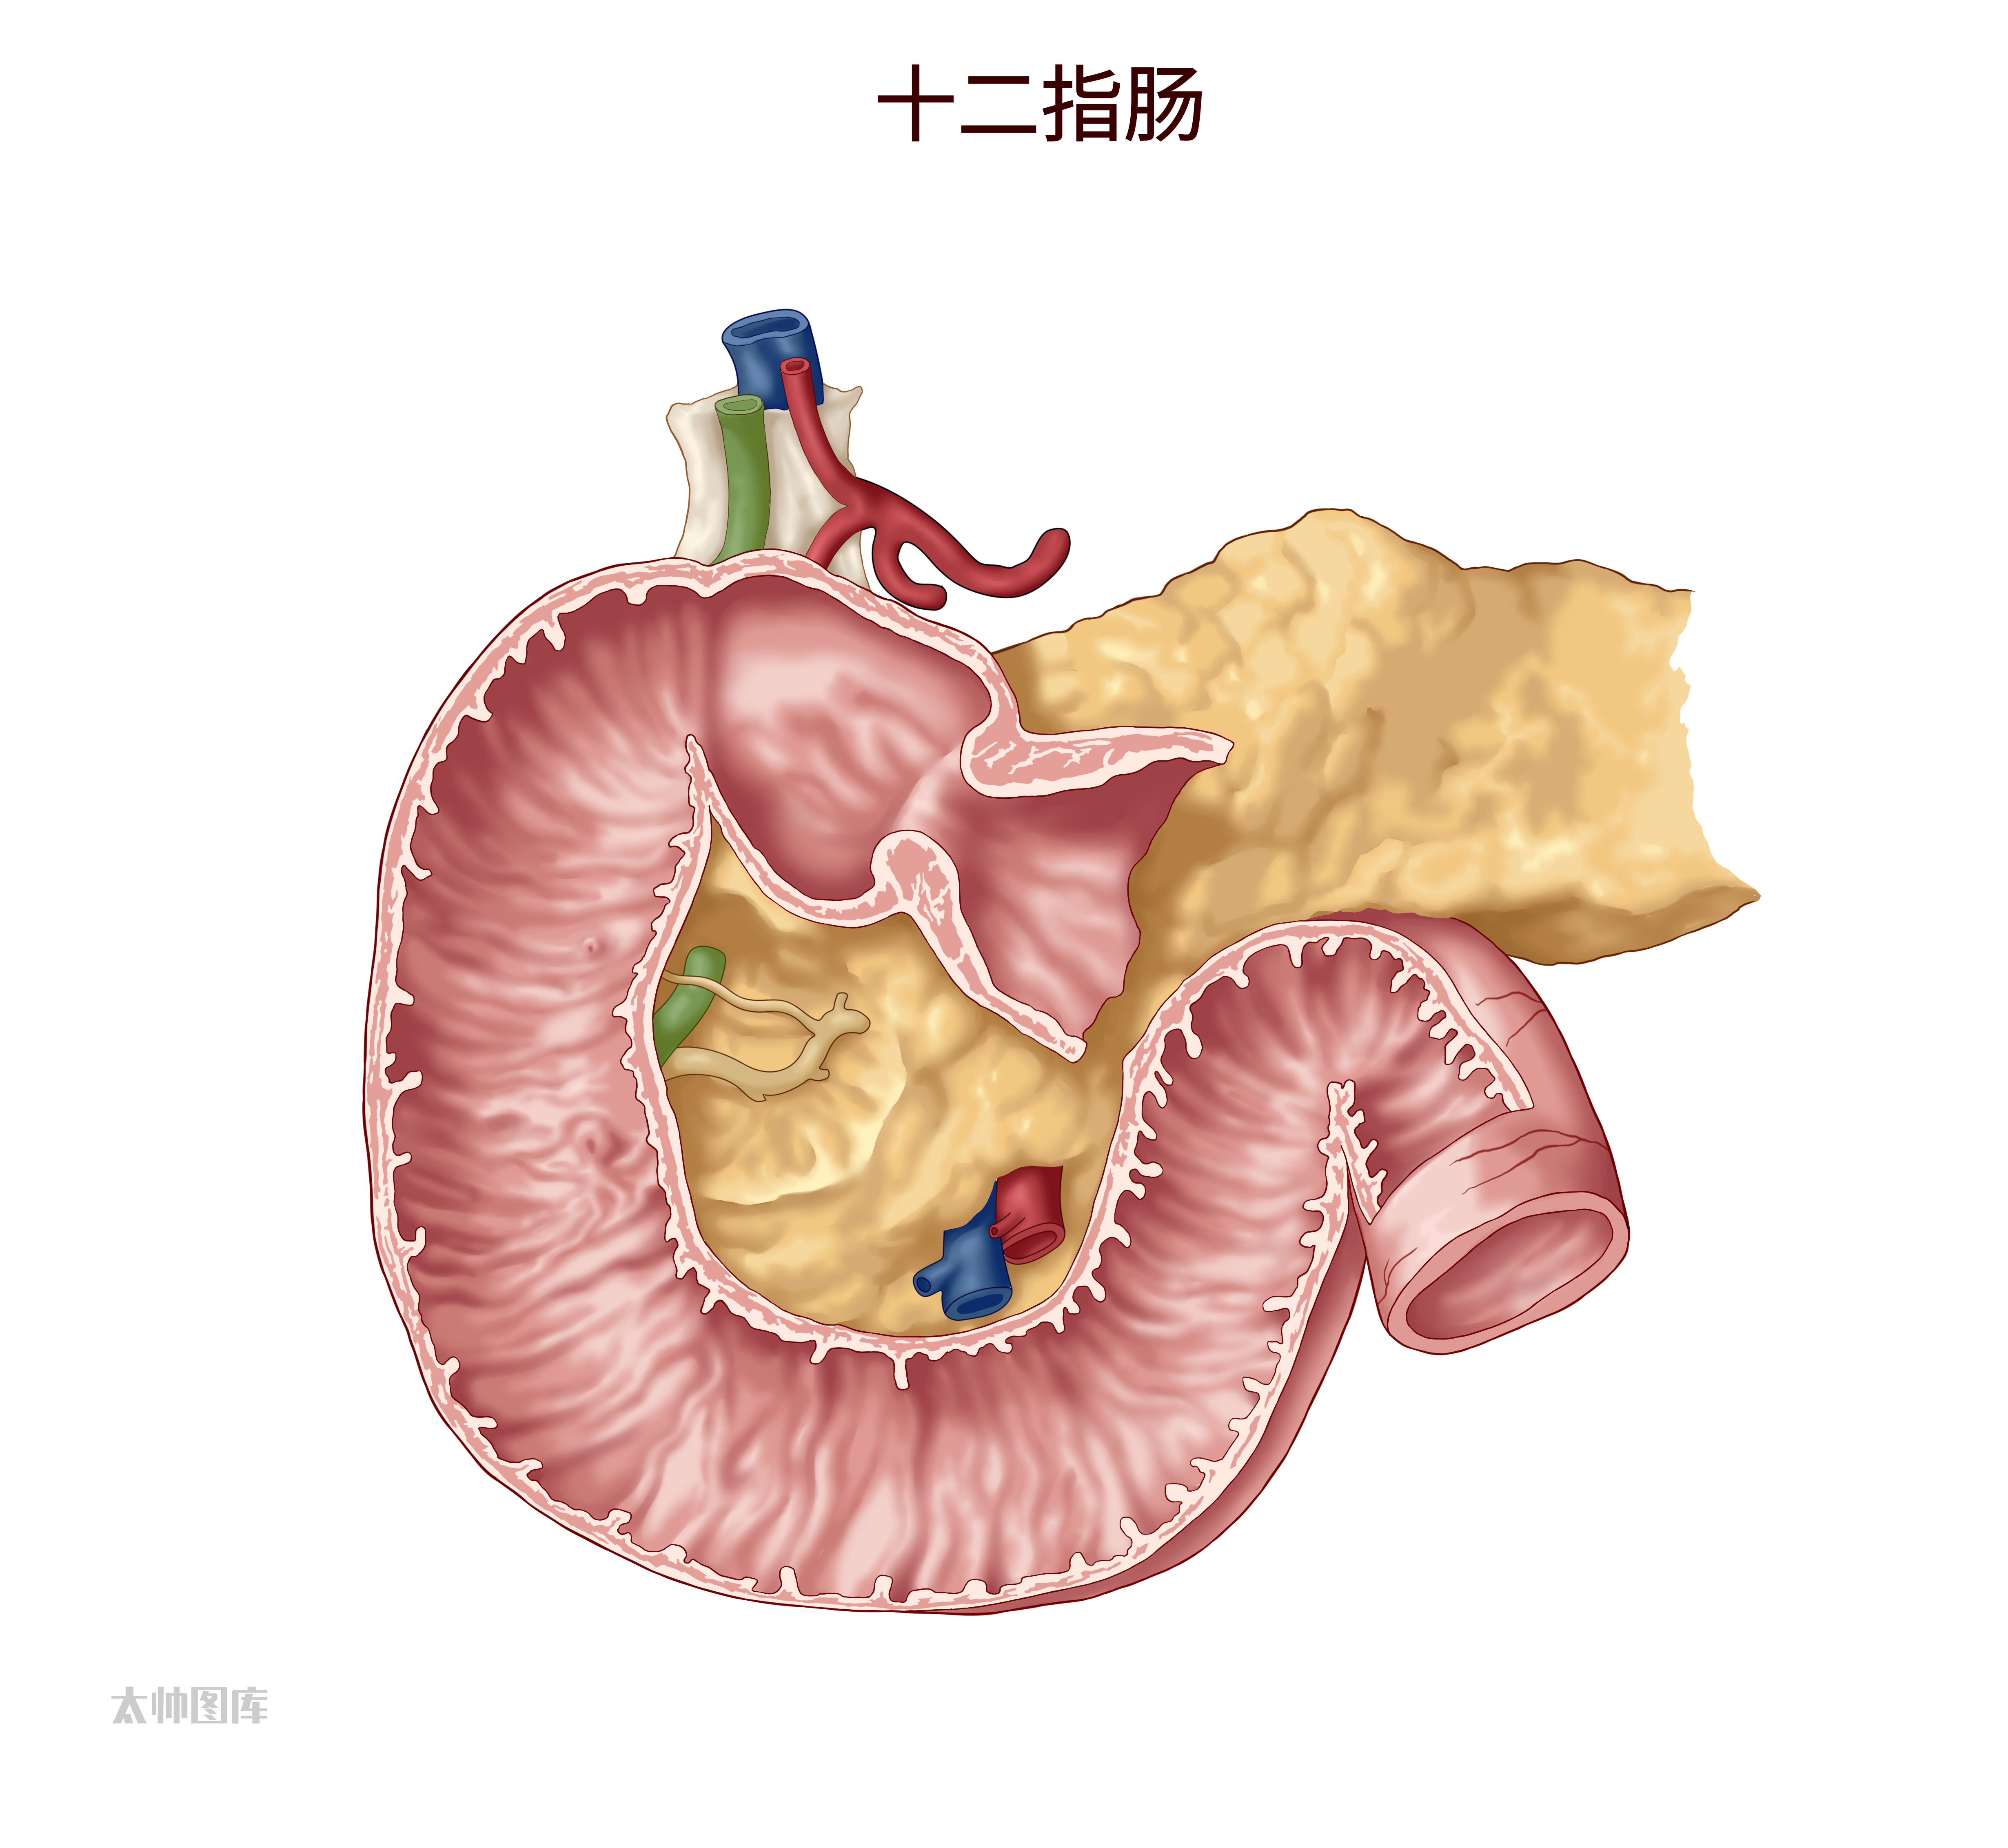 12指肠解剖图图片